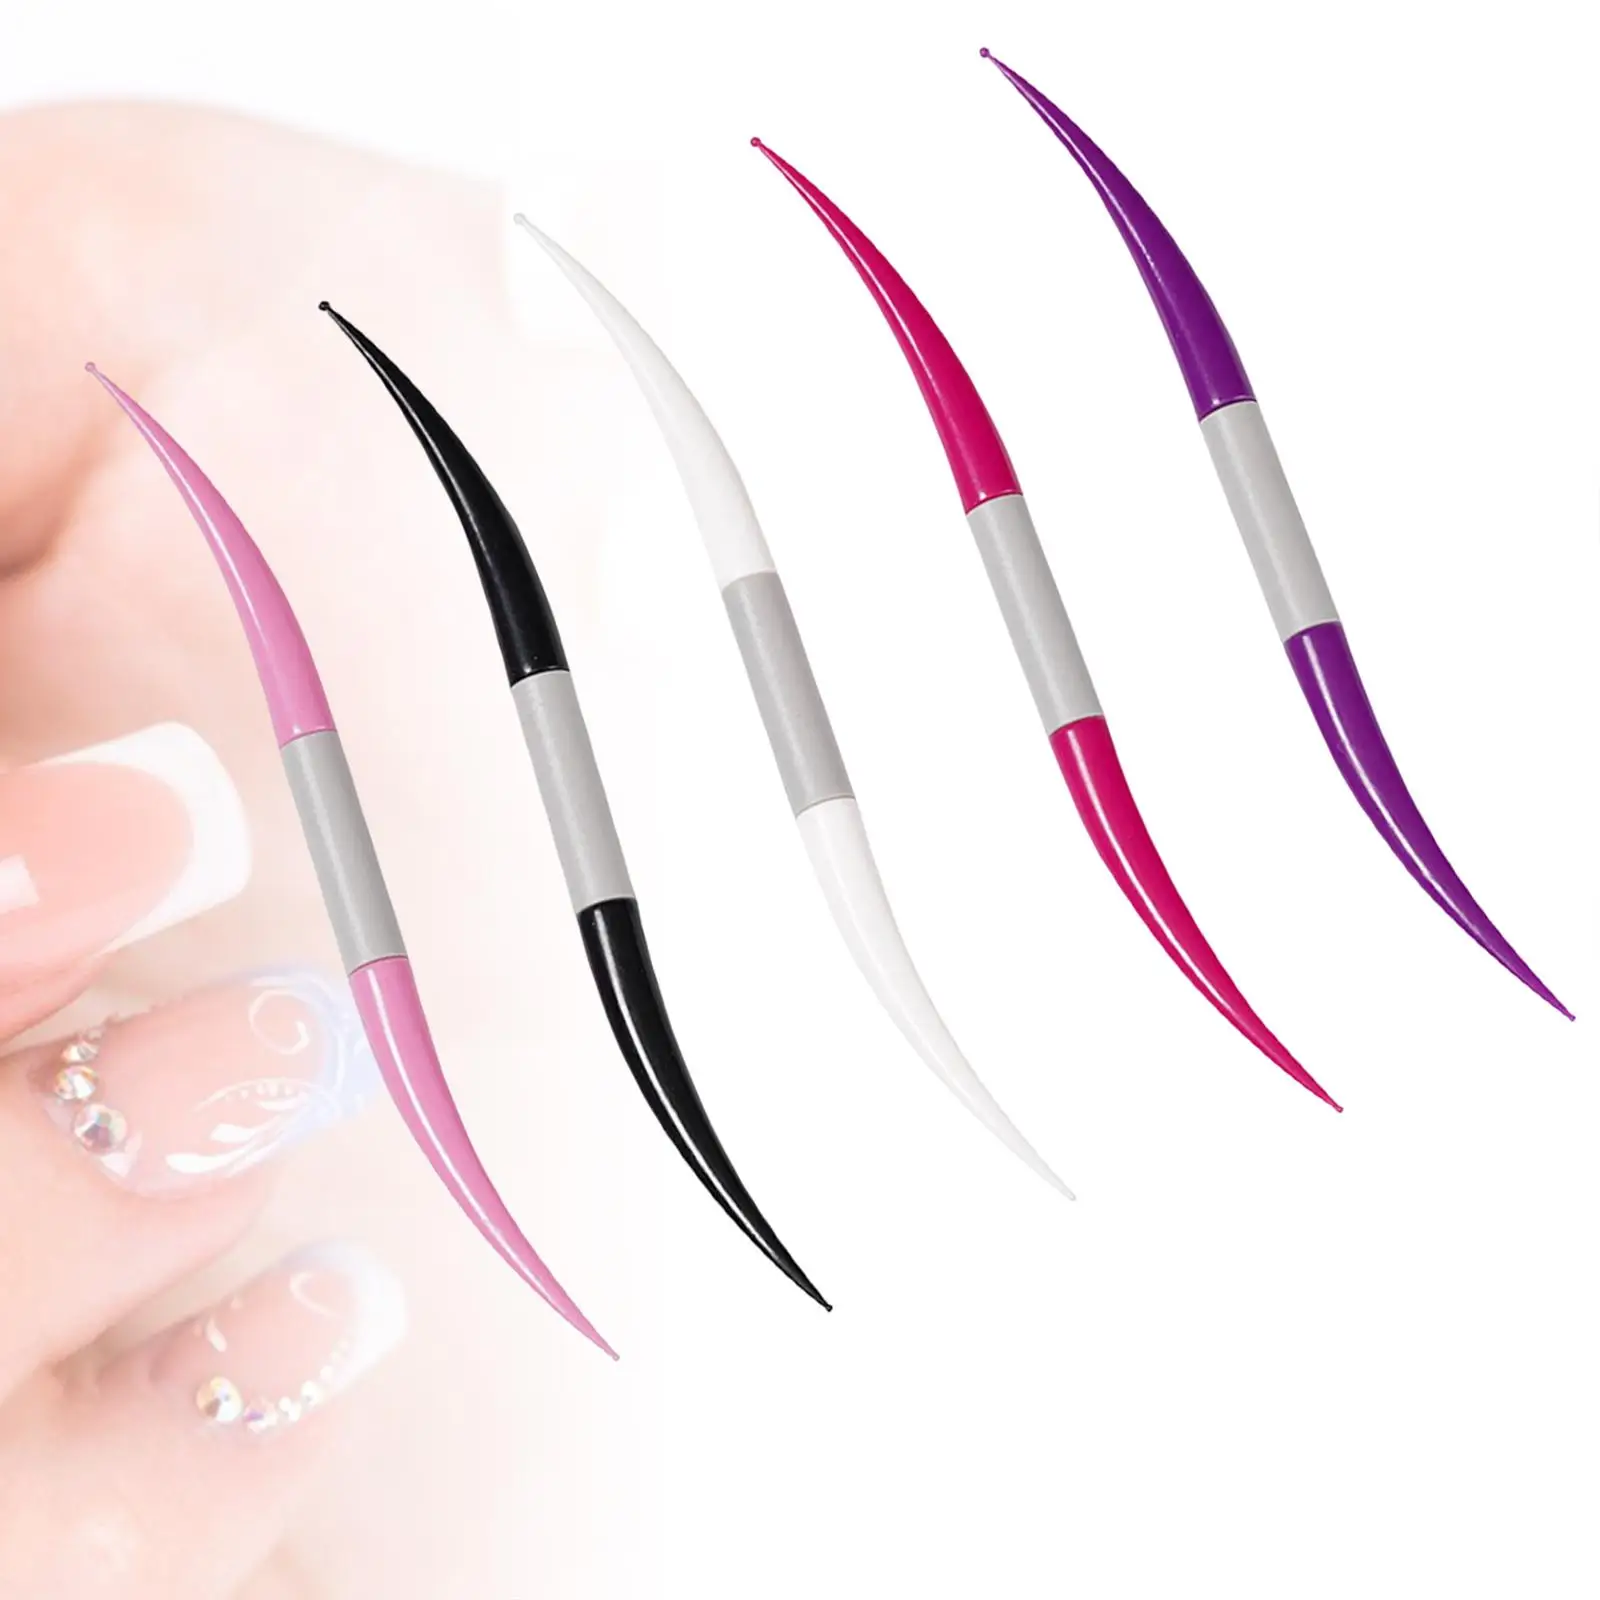 5x Nail Dotting Tools Set, Multi Colored Double Heads Nail Art Dot Tools Manicure Kit